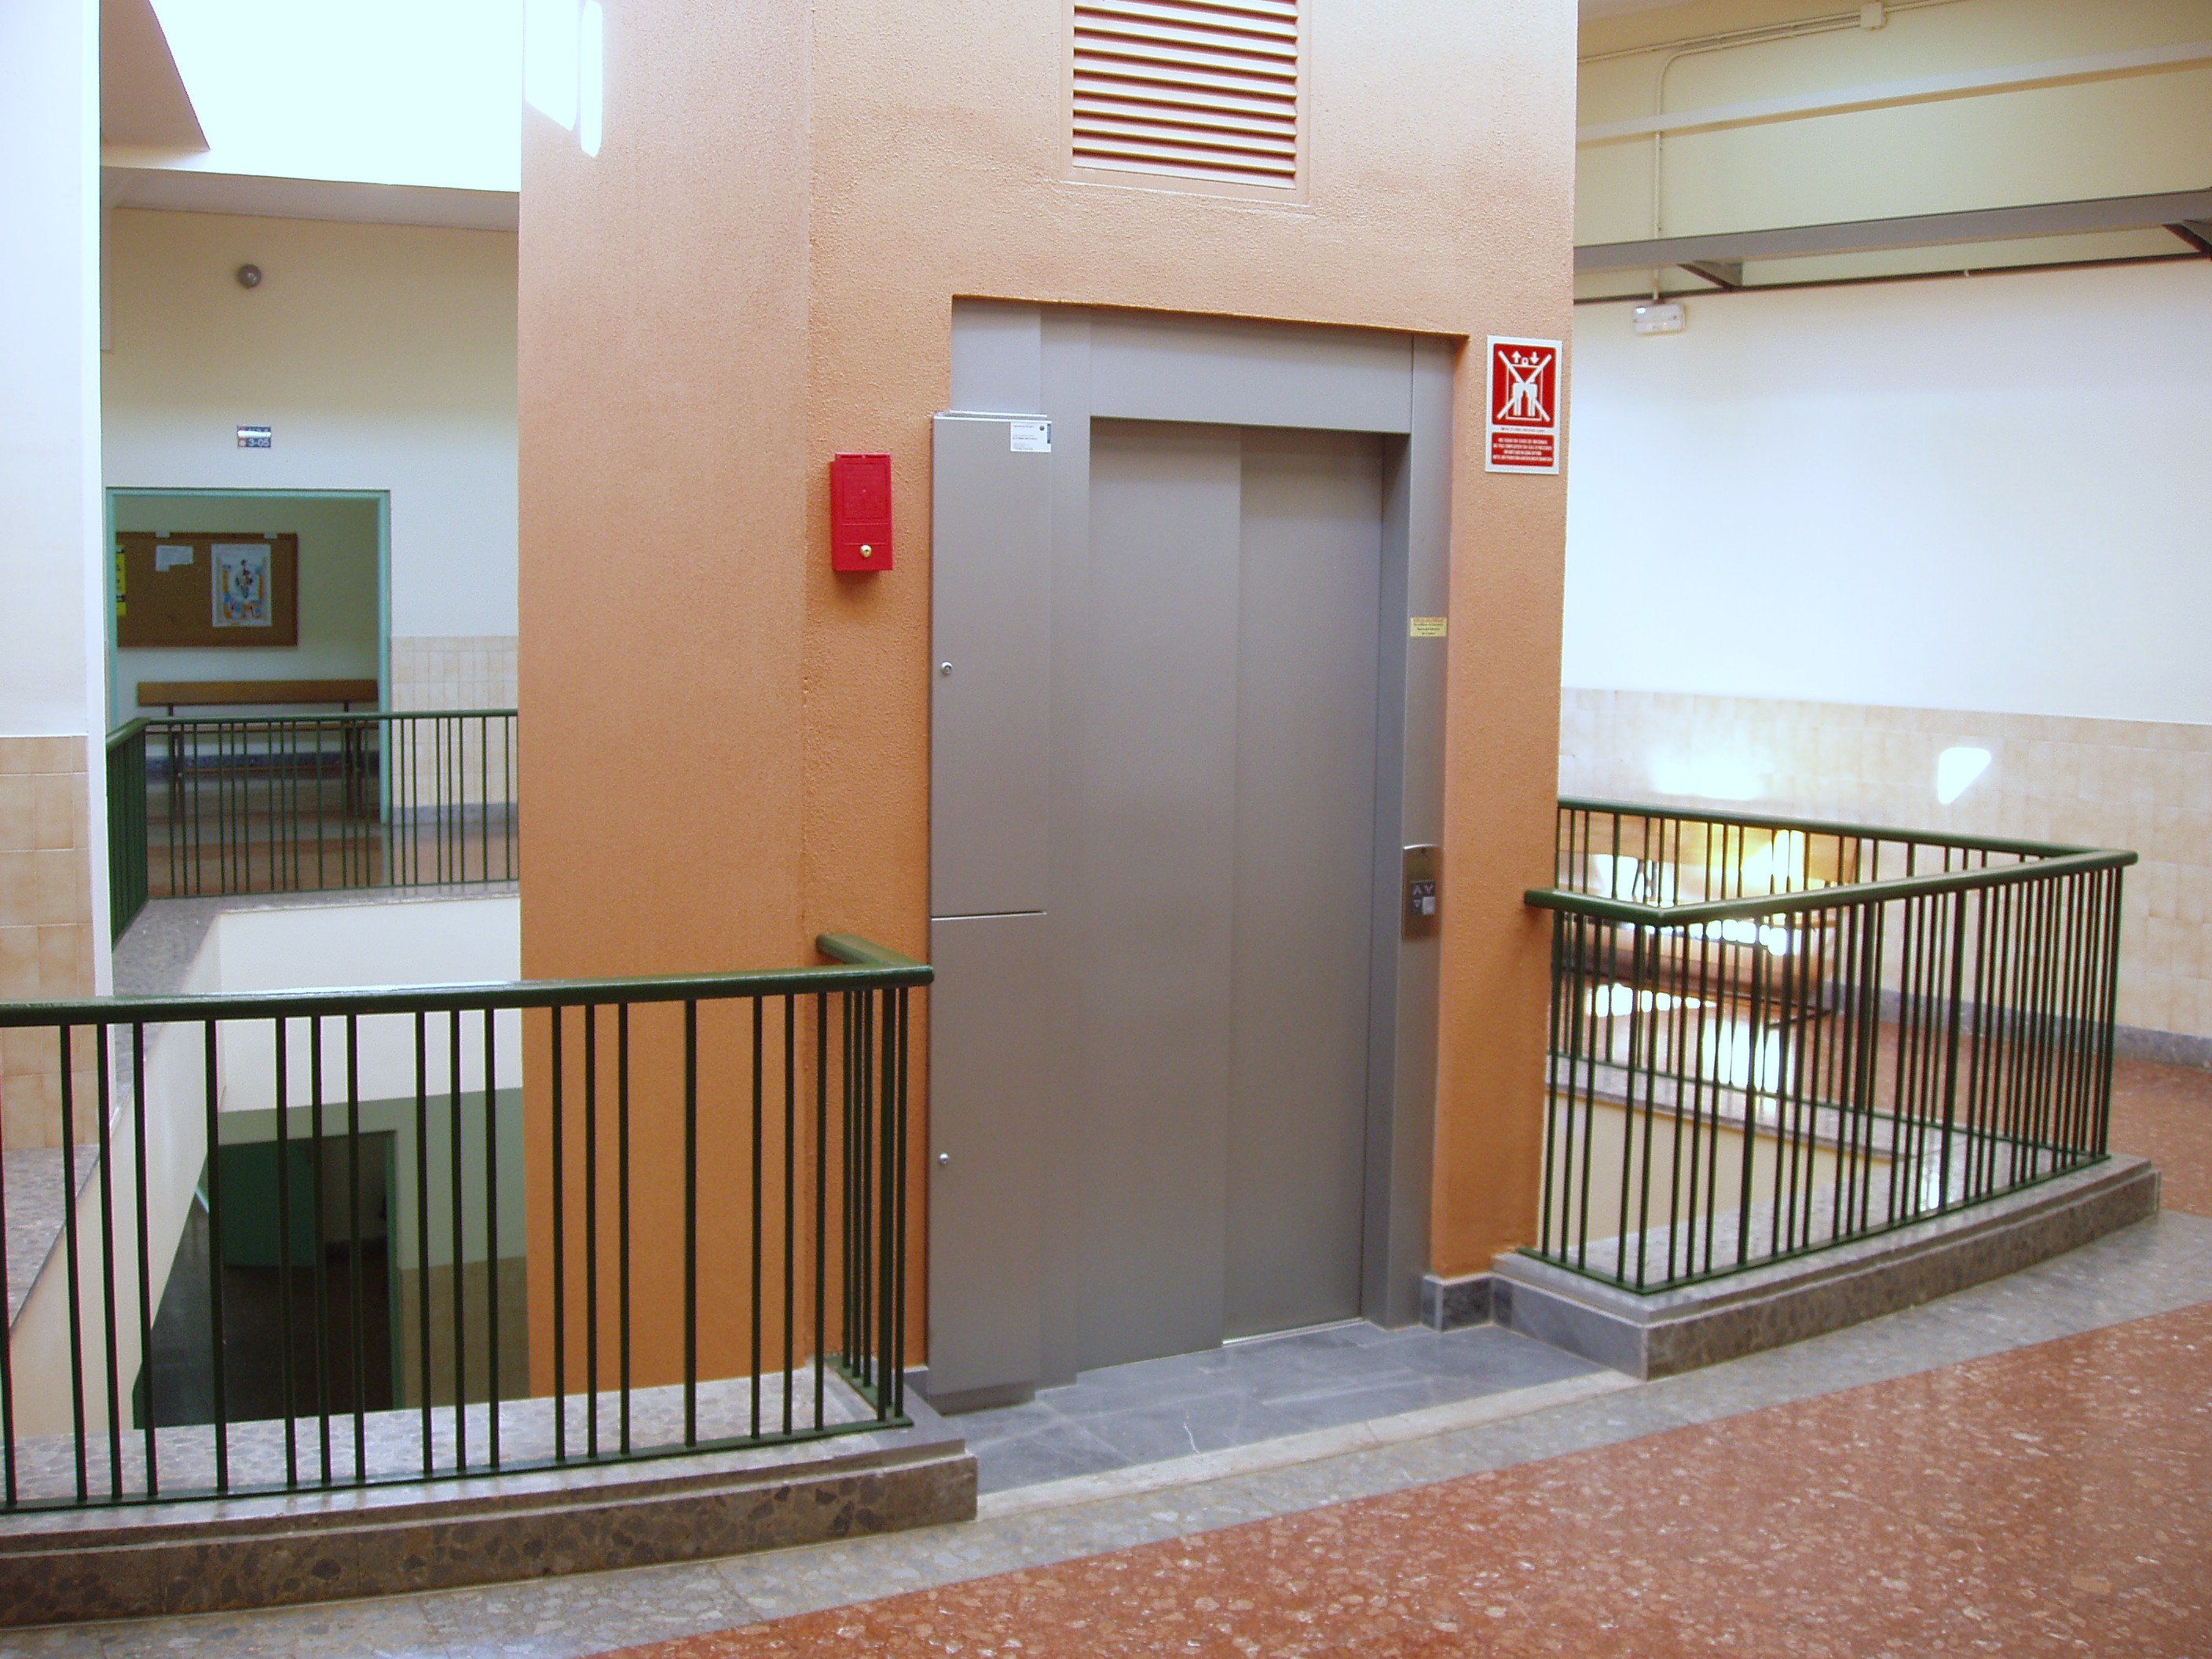 Presó per agredir sexualment en ascensors de Barcelona quatre noies